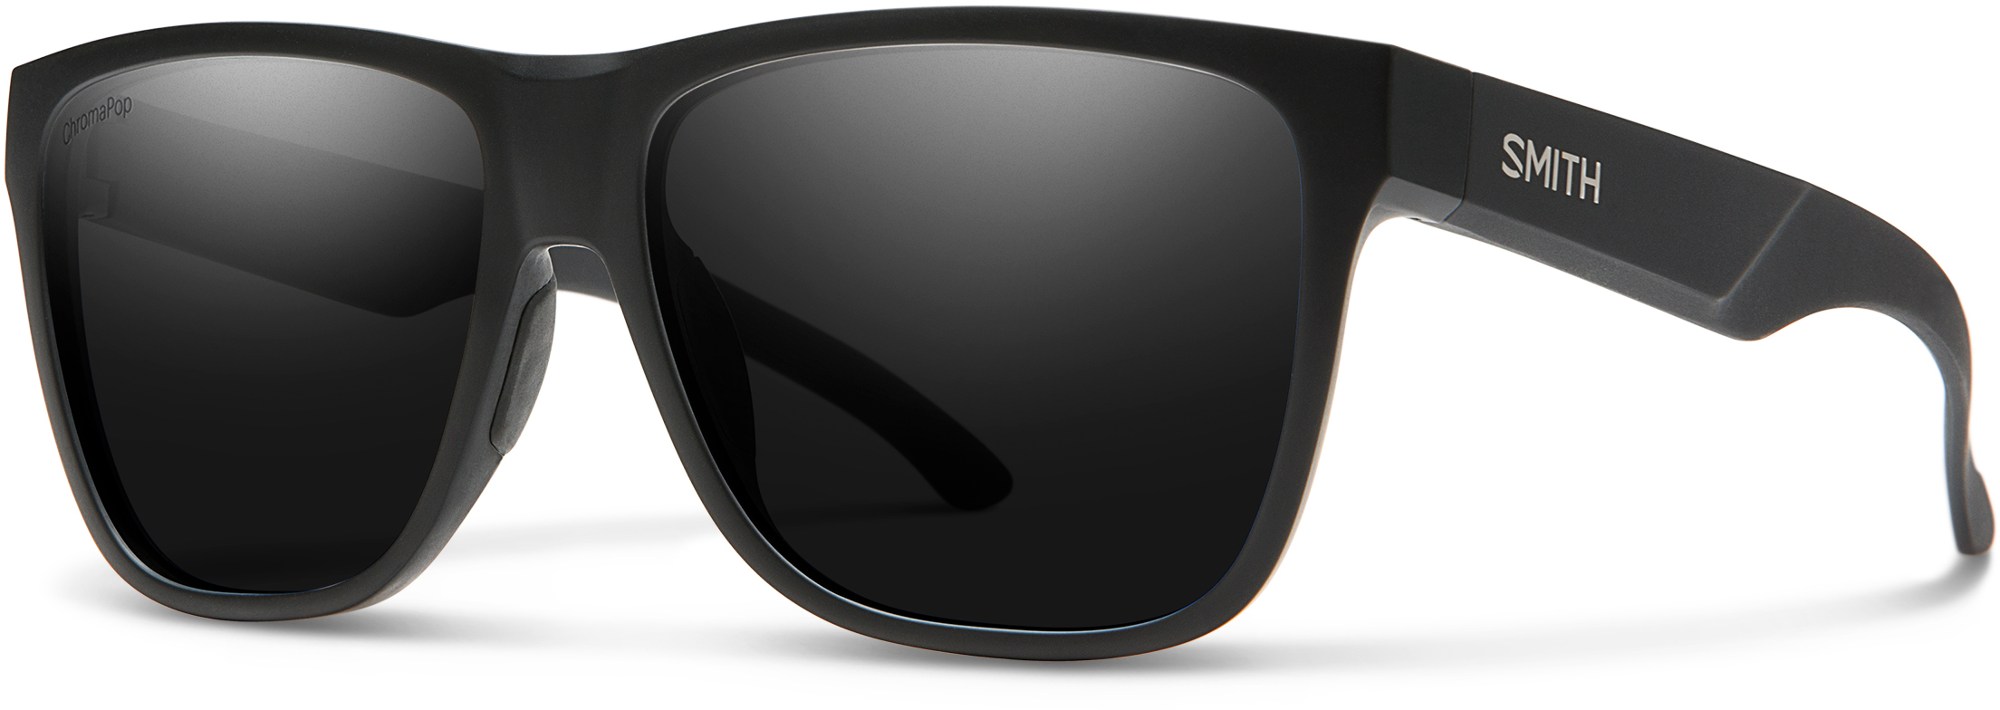 Поляризованные солнцезащитные очки Lowdown XL 2 ChromaPop Smith, черный футболка женская mf львица очки xl